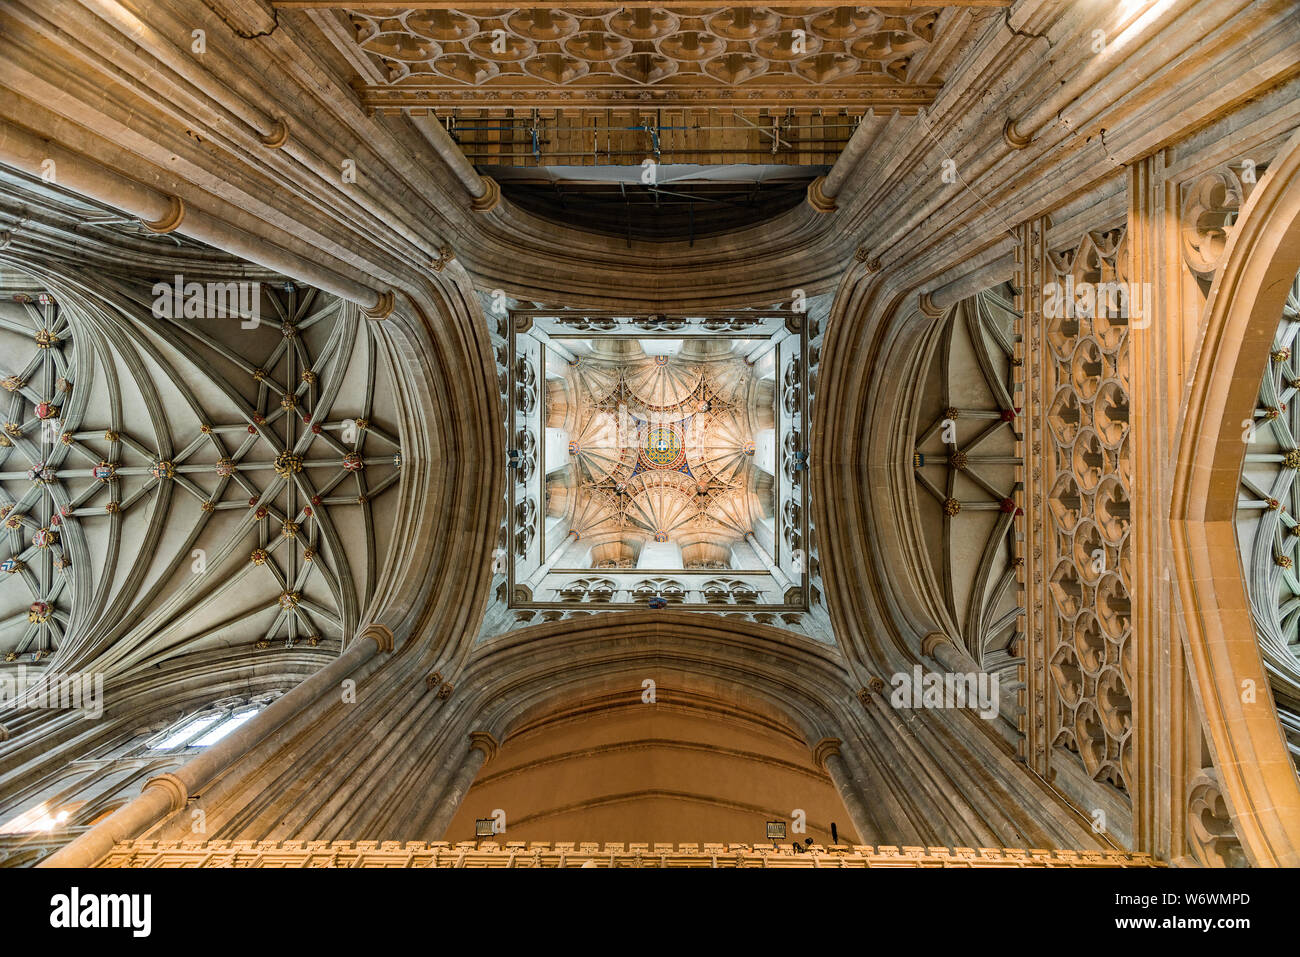 La Cathédrale de Canterbury Tower - vue intérieure Banque D'Images